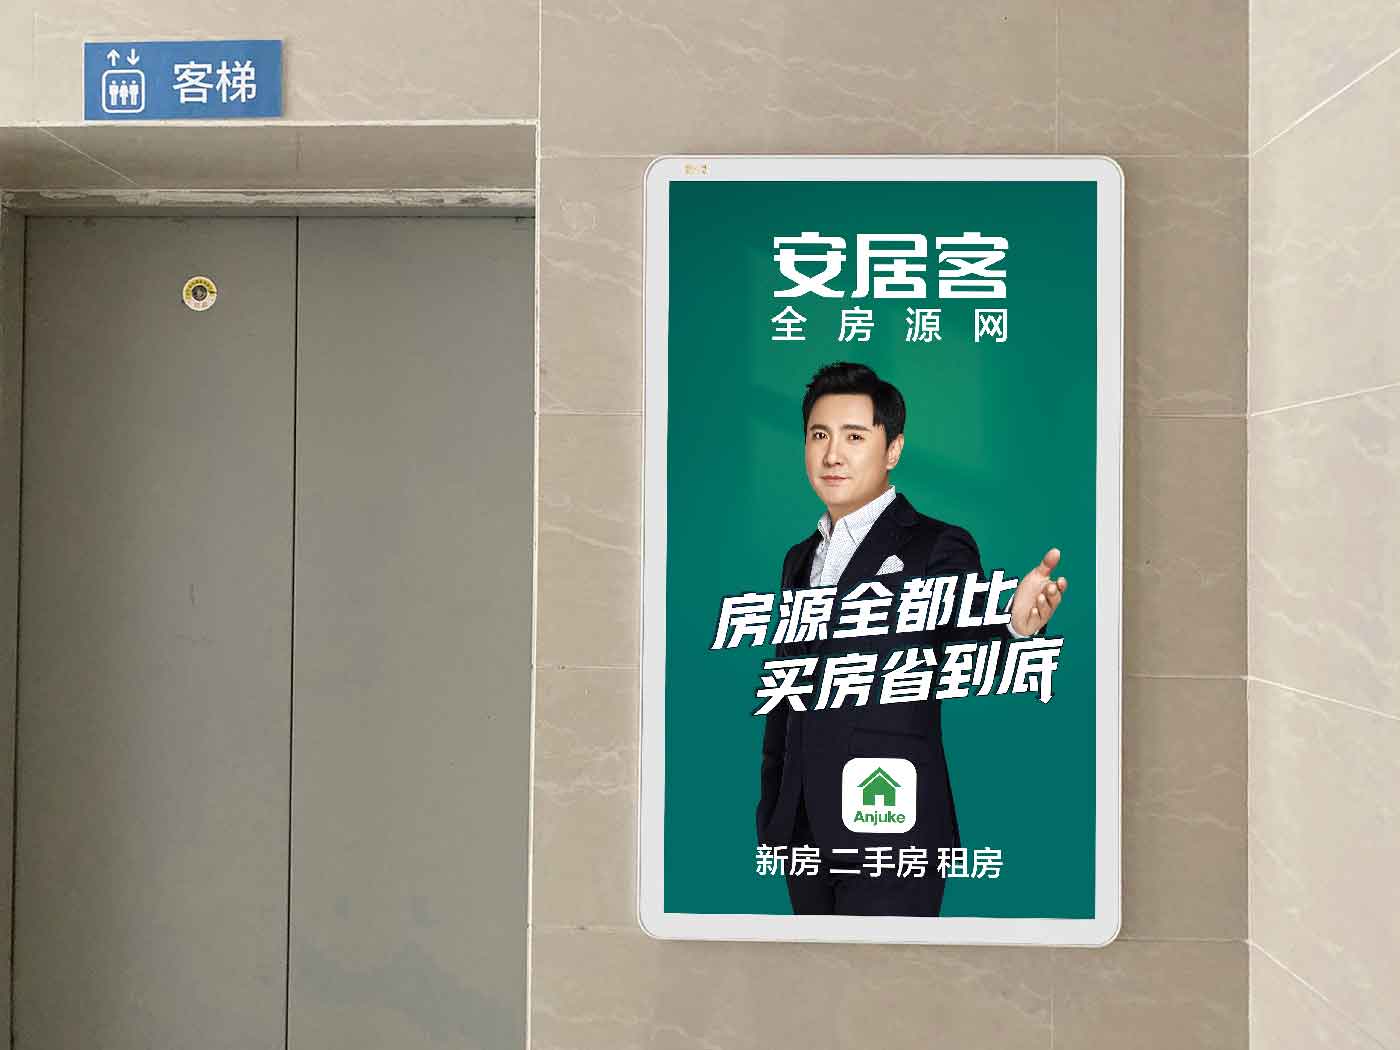 社区道闸广告投放 上海门禁广告媒体